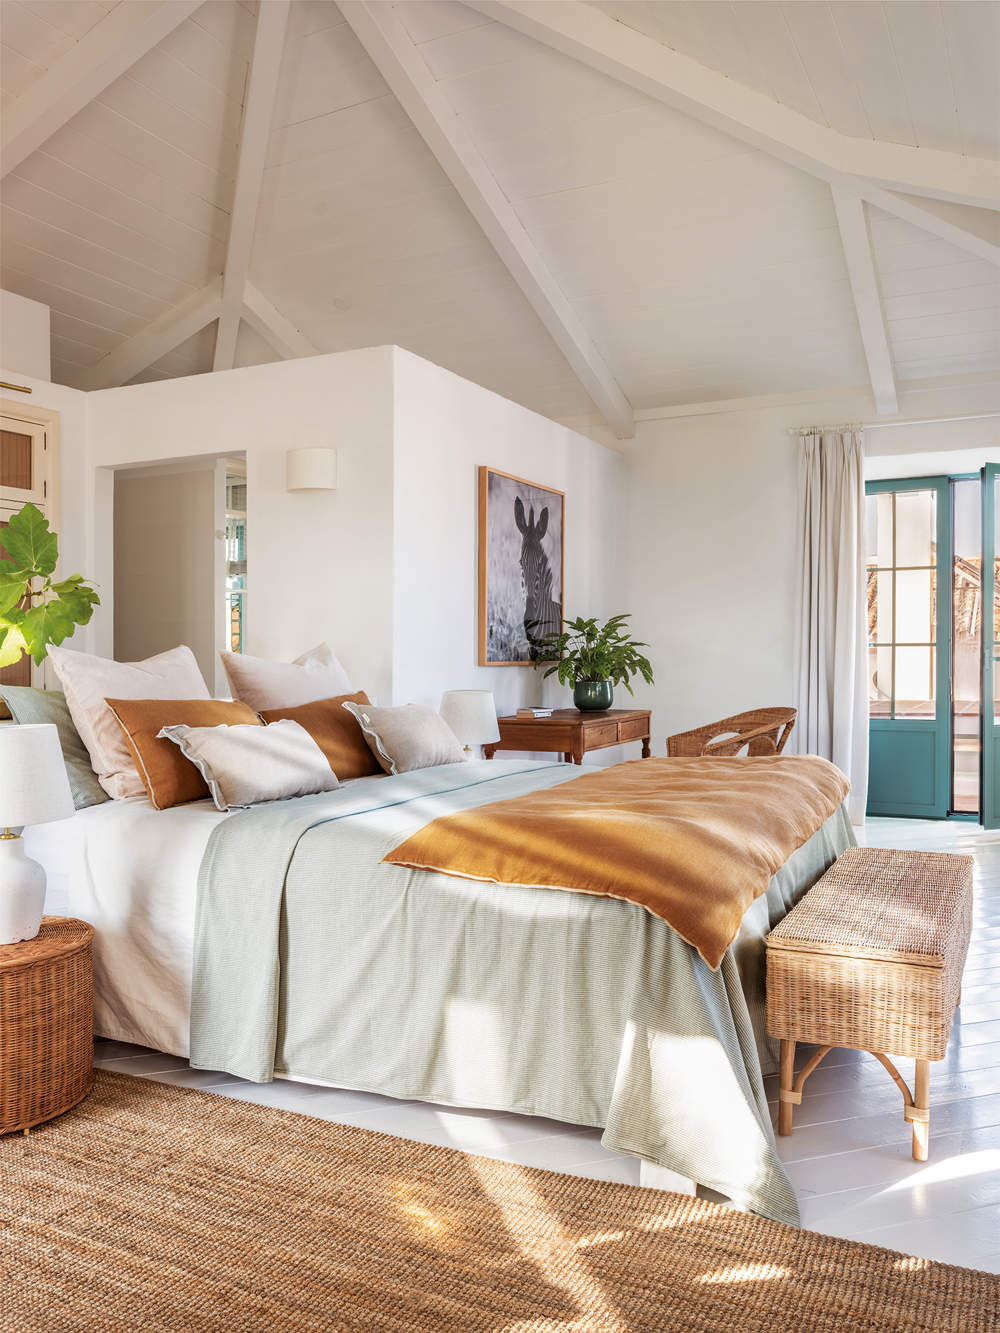 Dormitorio rústico moderno blanco con ropa de cama color tierra y alfombra de yute